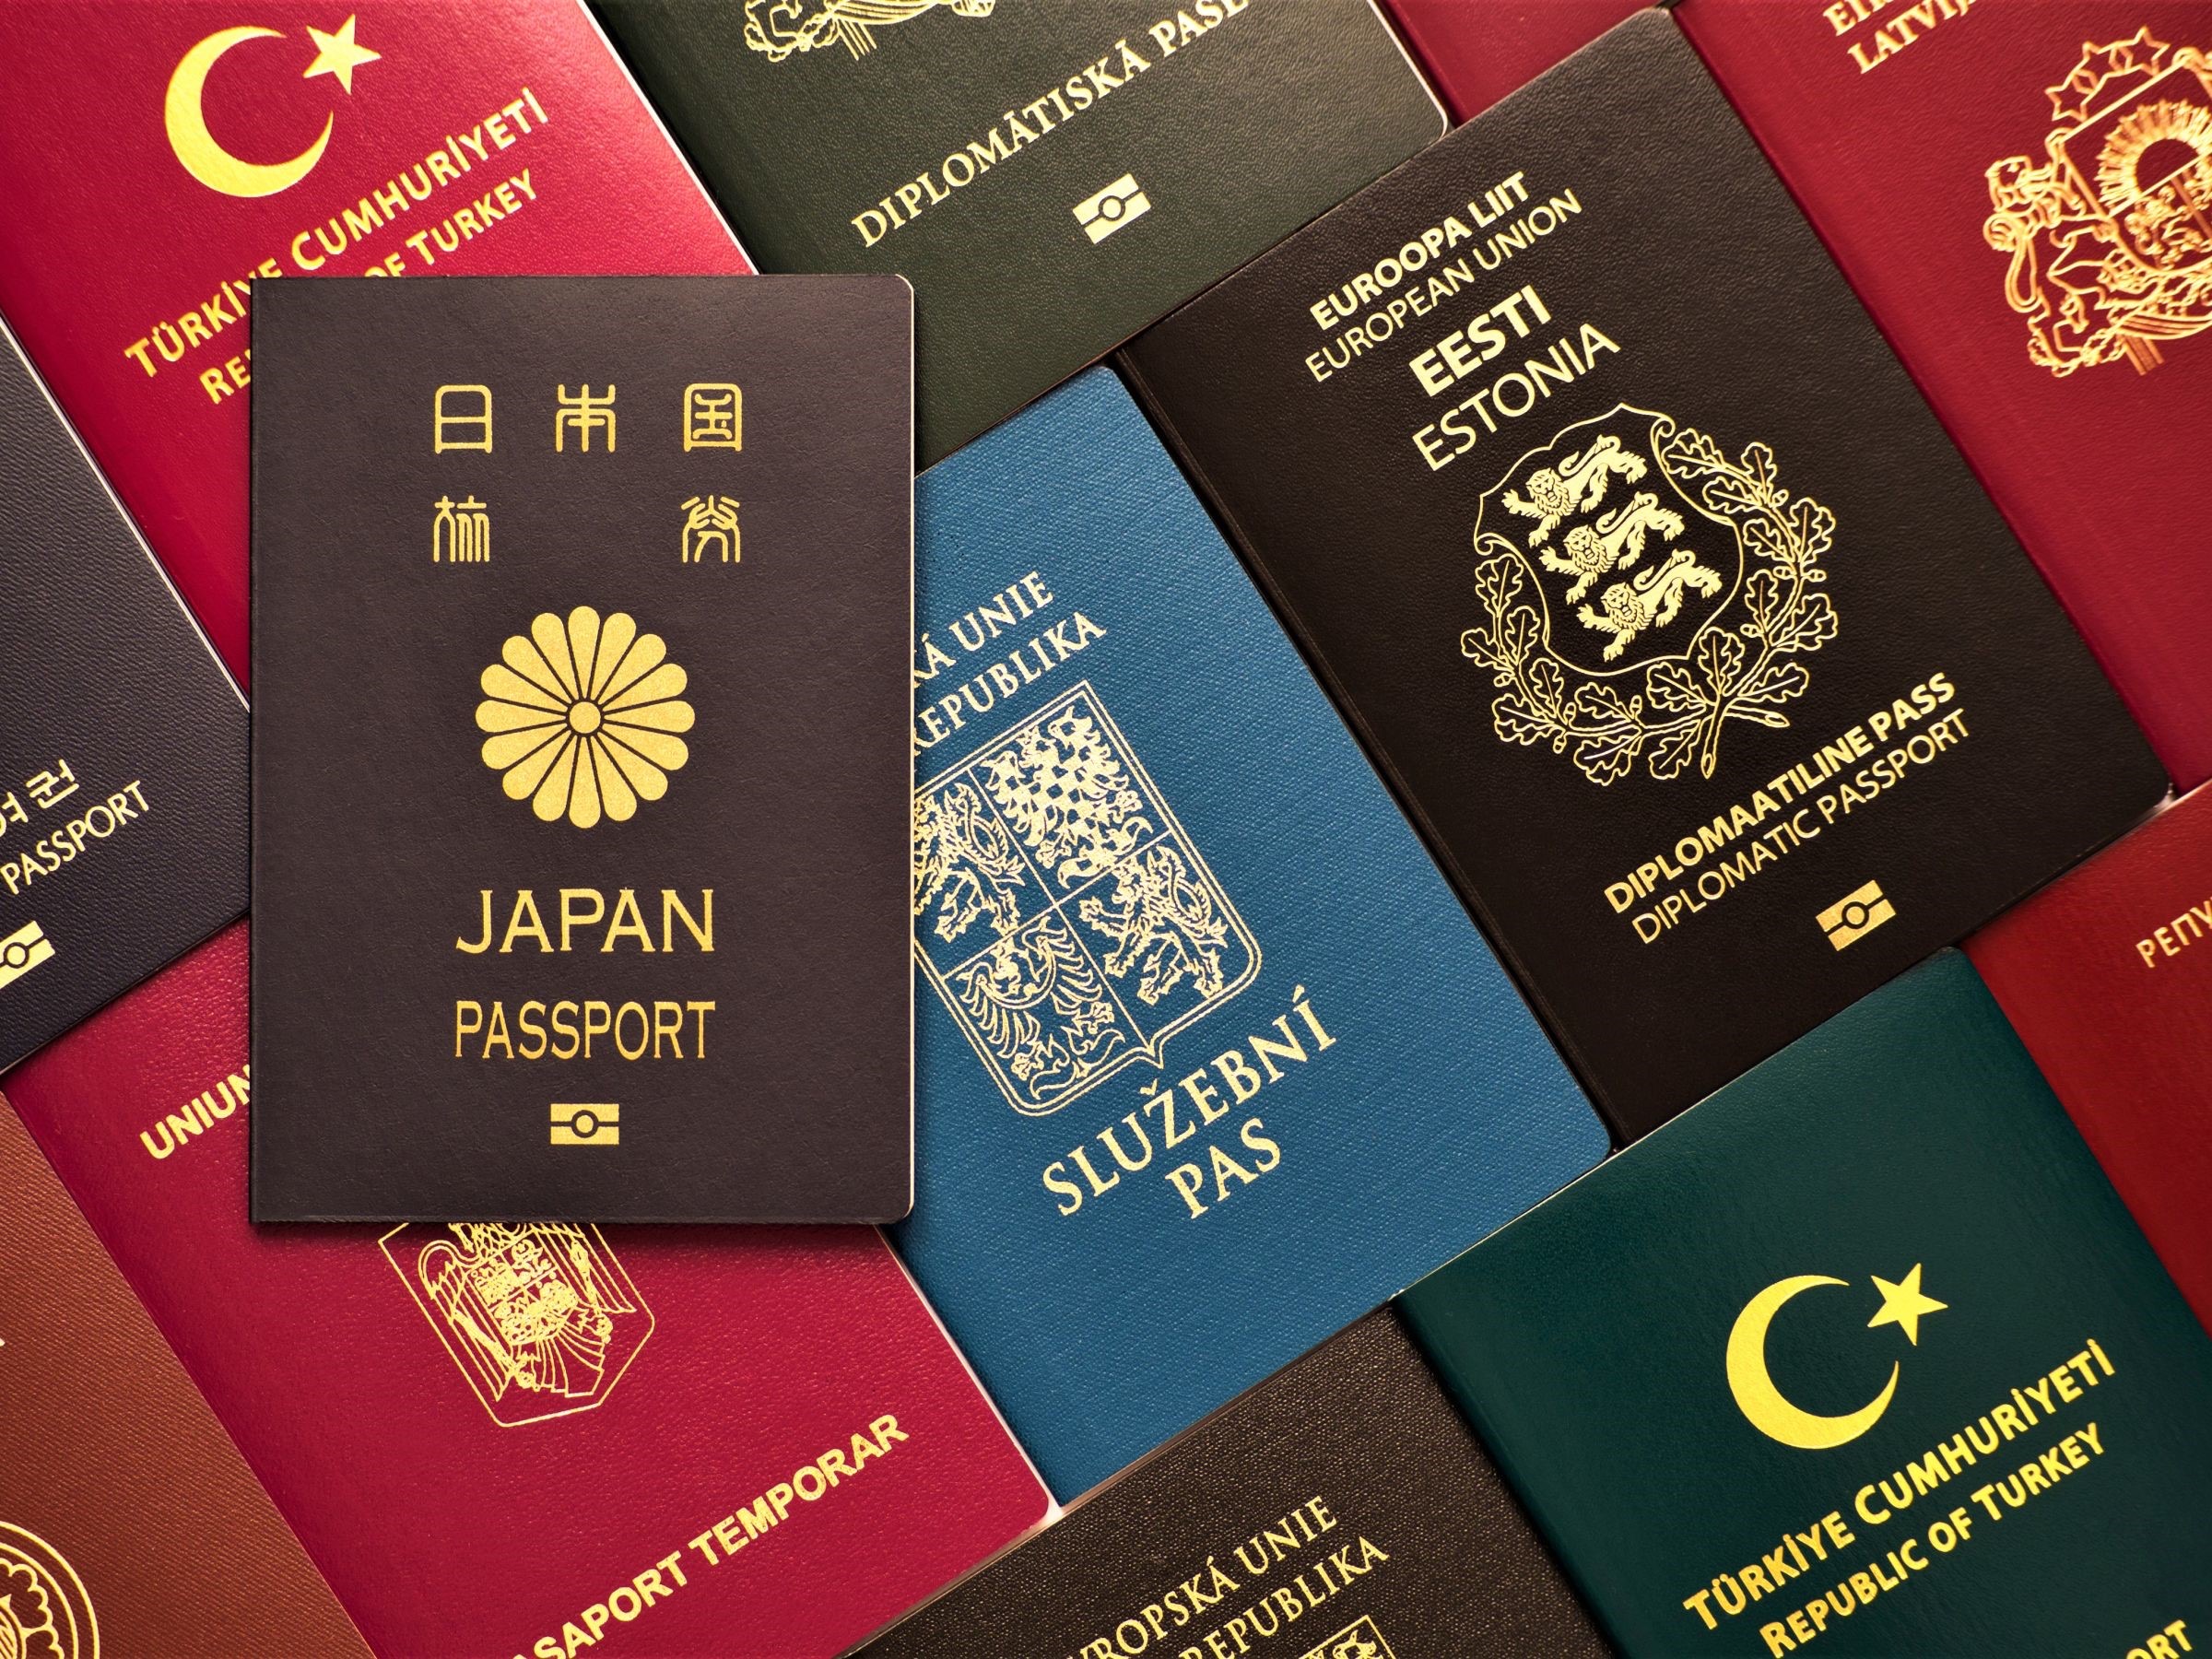 Gia hạn cư trú thêm 30 ngày cho người nước ngoài cư trú hợp pháp tại Đài Loan trên 180 ngày lần thứ 19. (Nguồn ảnh: Sở Di dân)